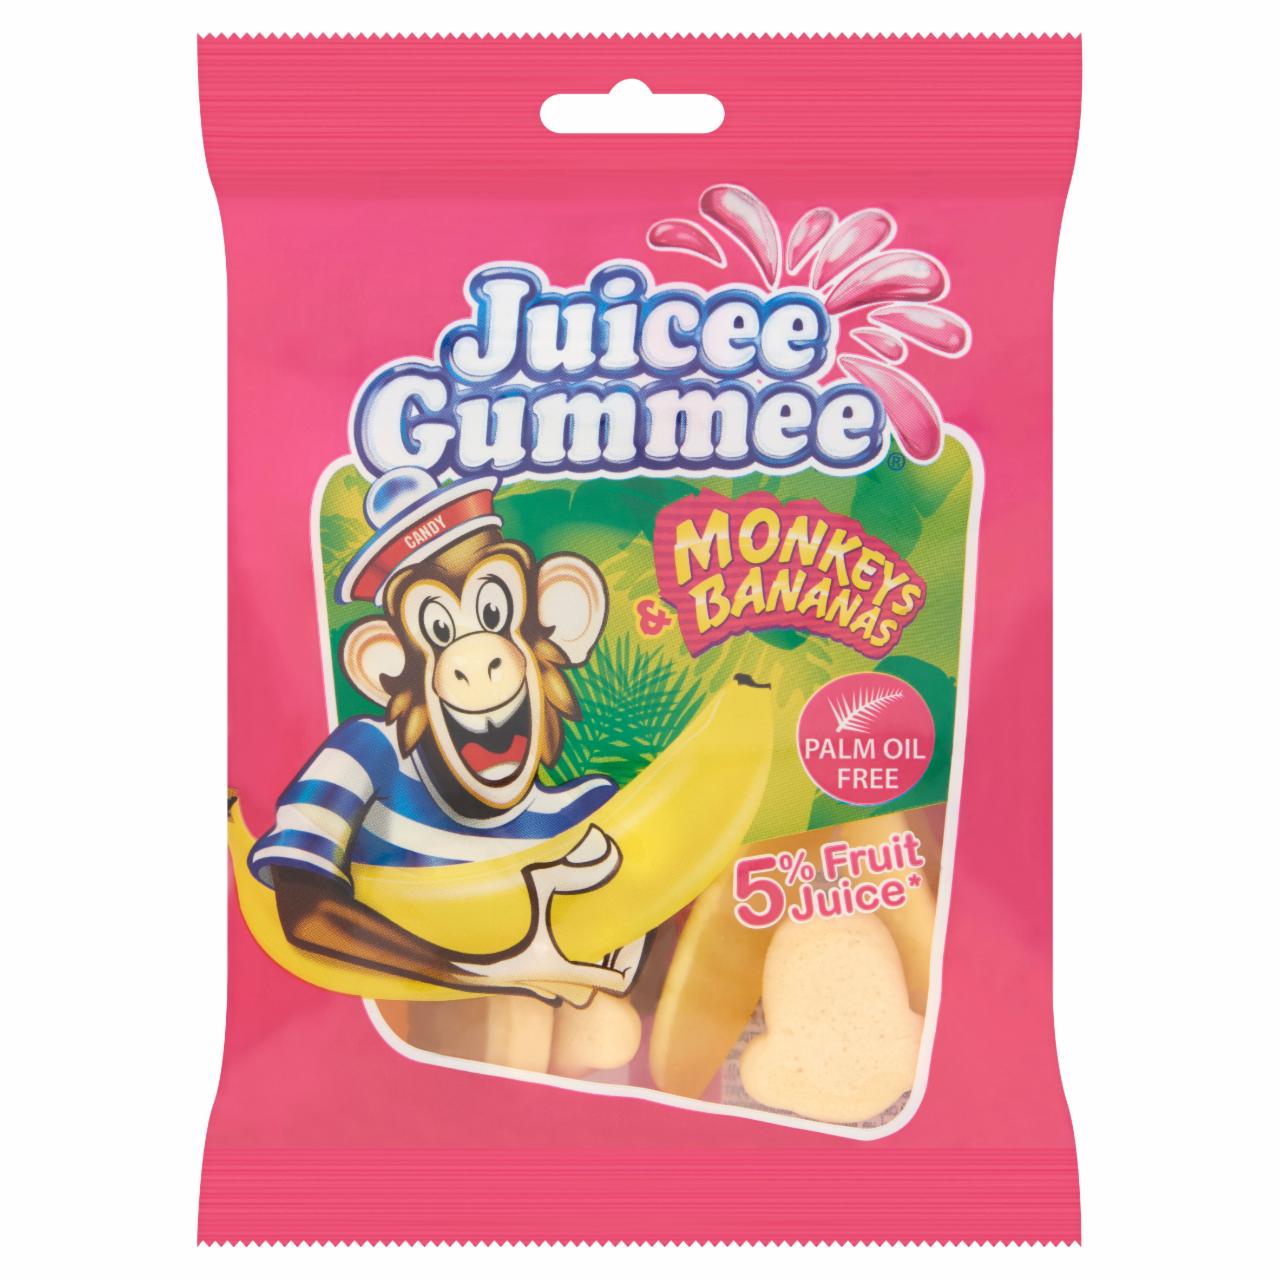 Képek - Juicee Gummee Monkeys & Bananas gyümölcsös ízű gumicukor 85 g